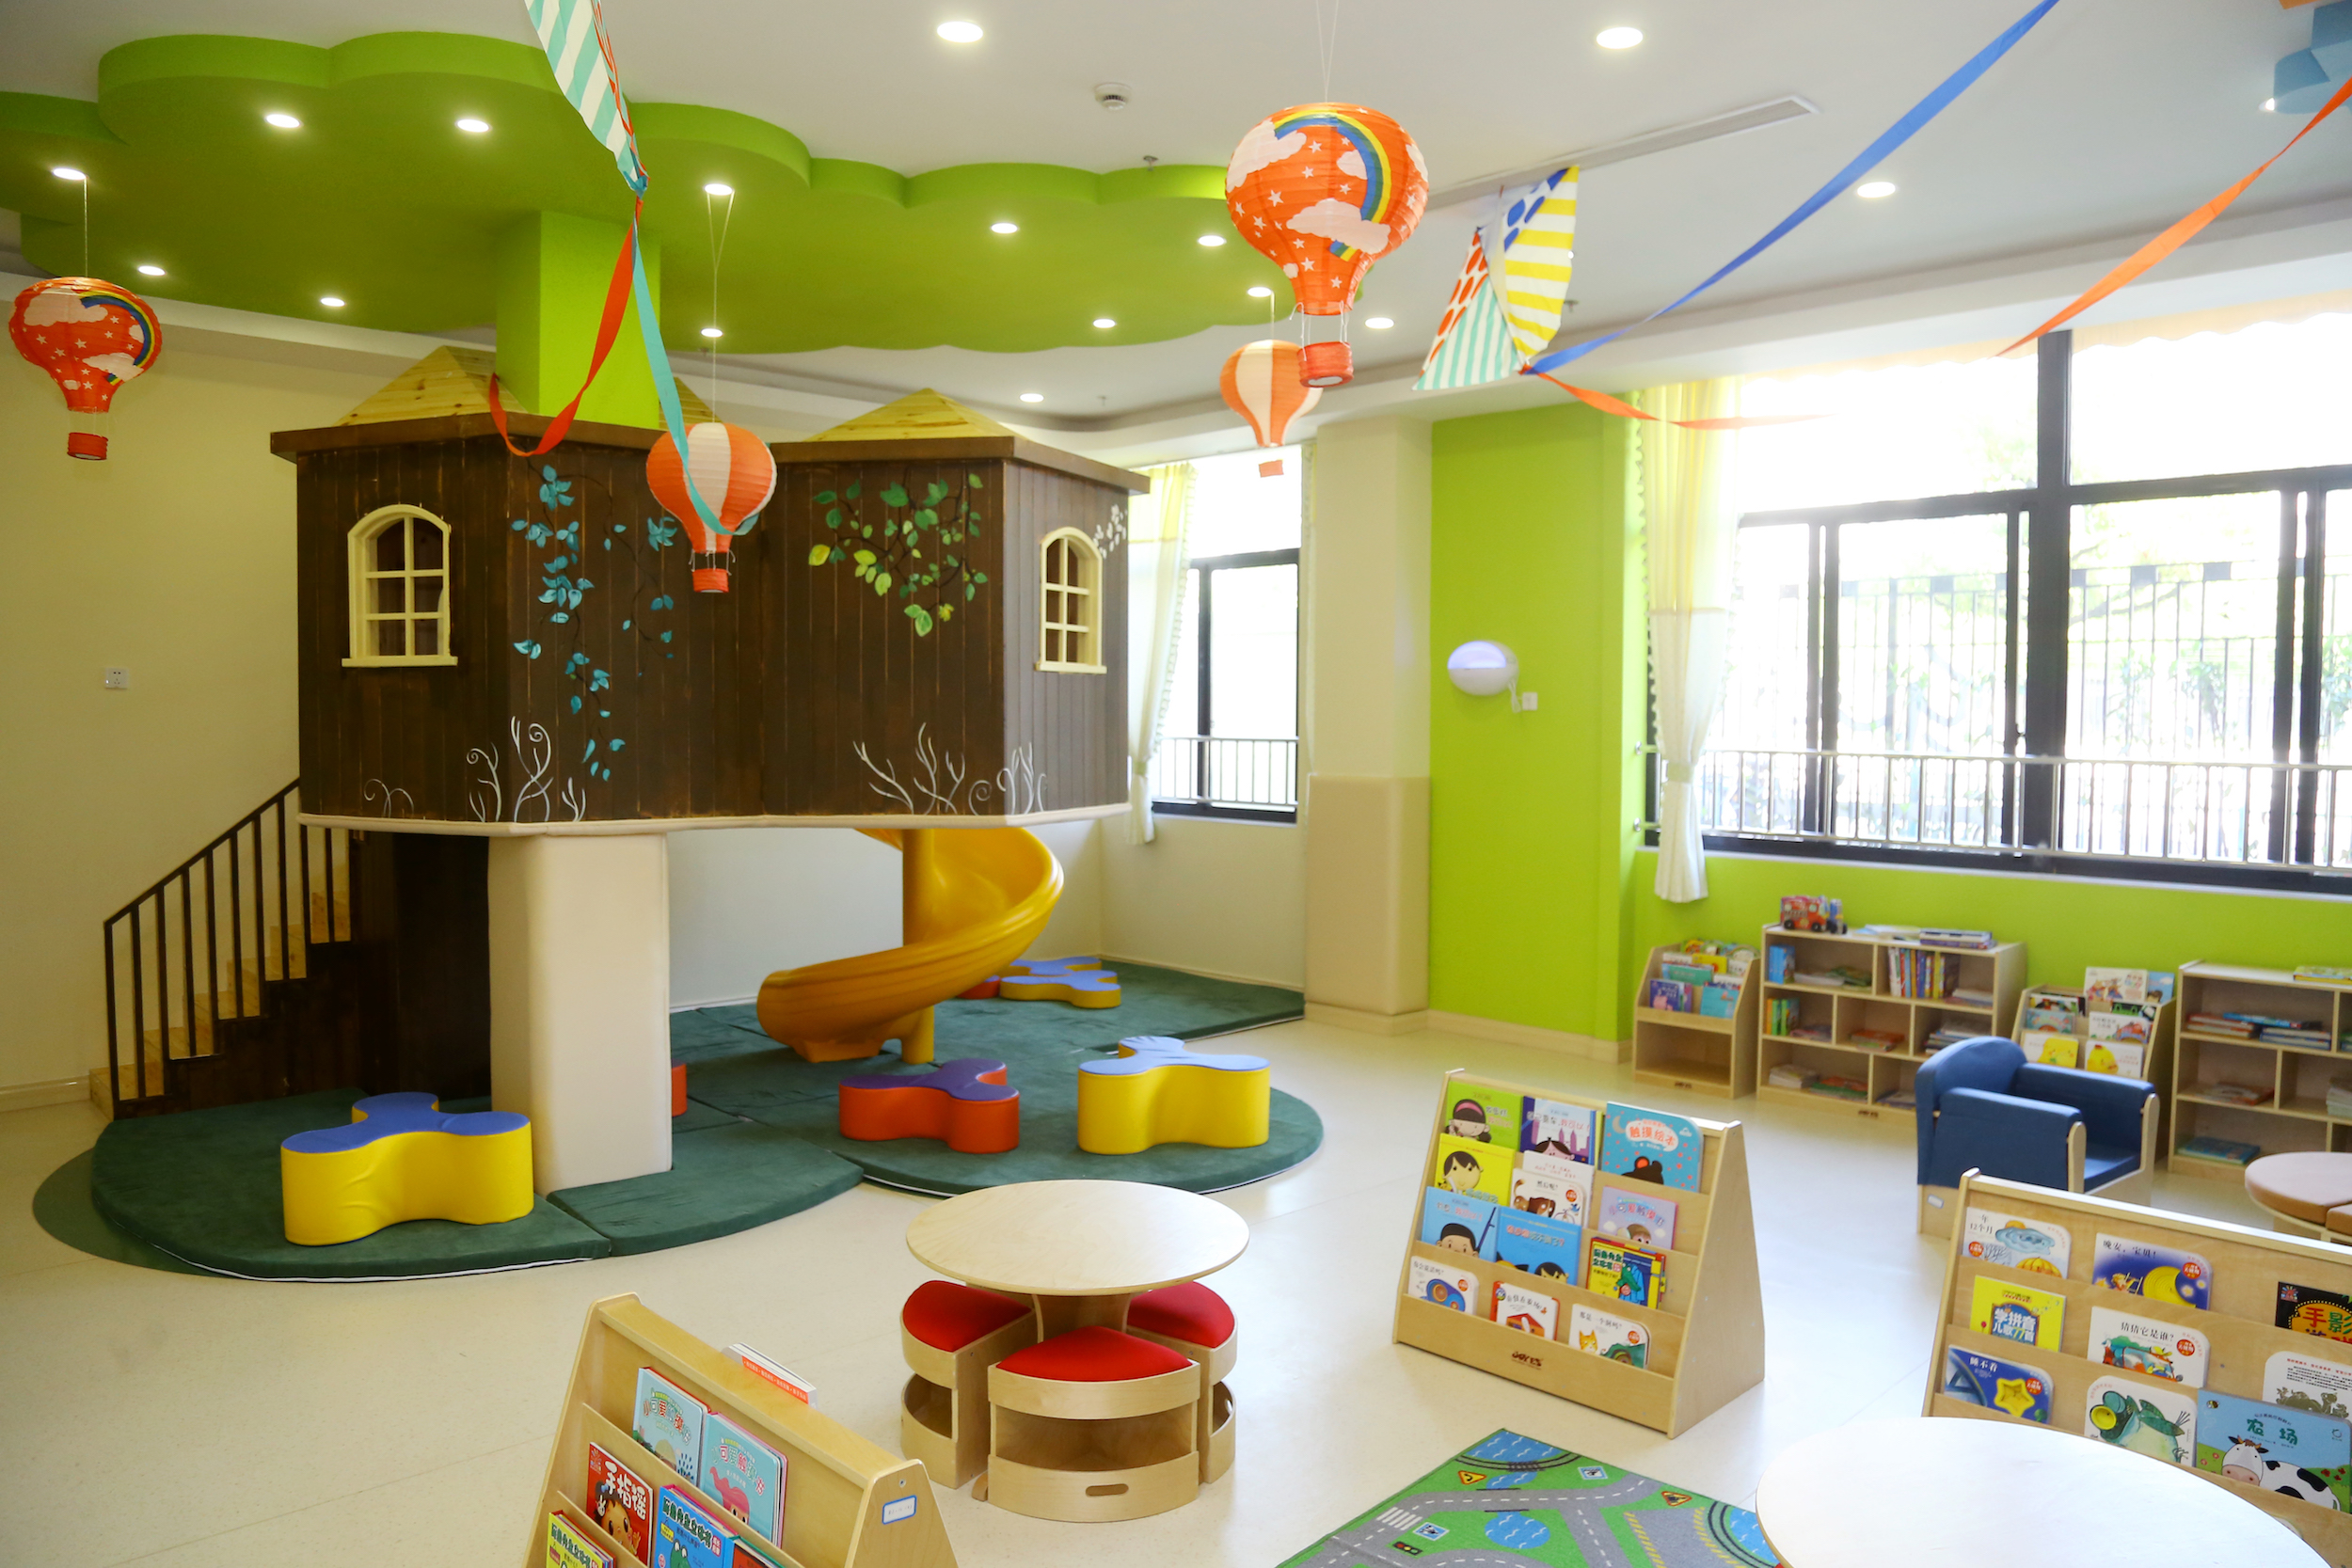 幼儿园设计|儿童教育空间设计|早教教室设计_宋庄网-宋庄艺术资讯网